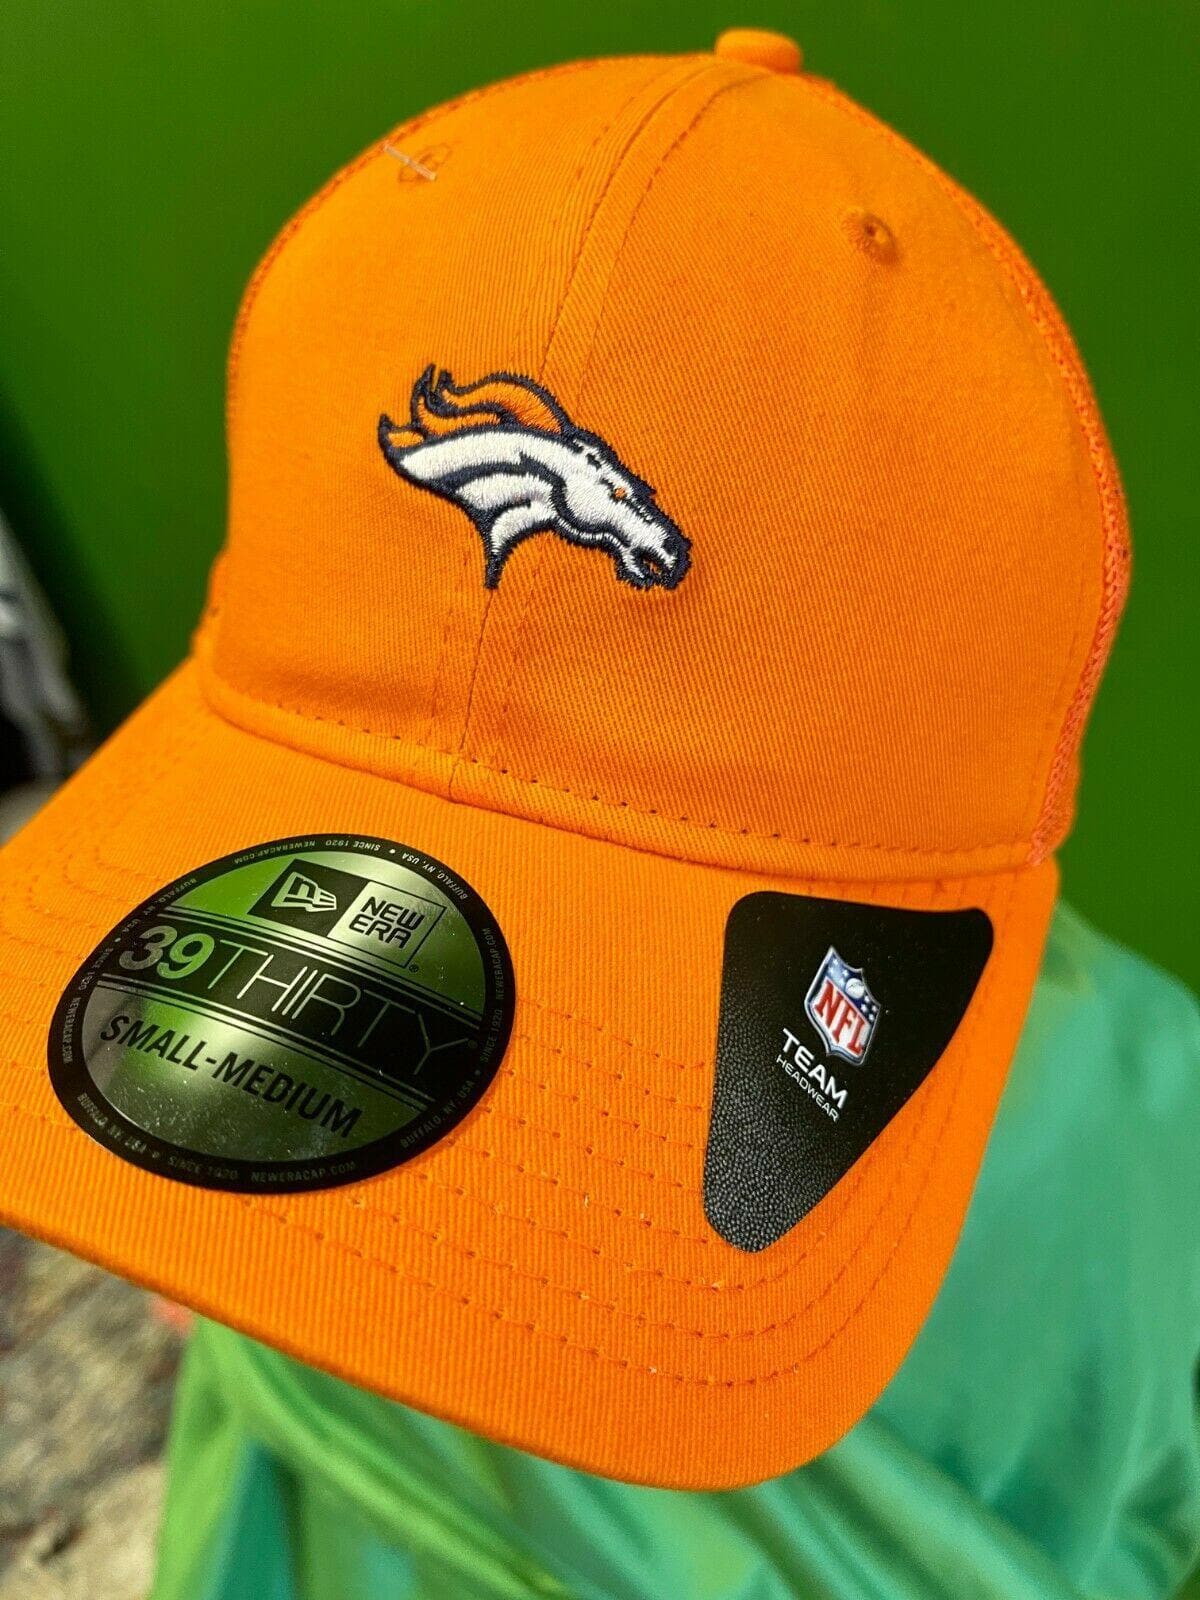 NFL Denver Broncos New Era 39THIRTY Team Precision Cap Hat S-M NWT